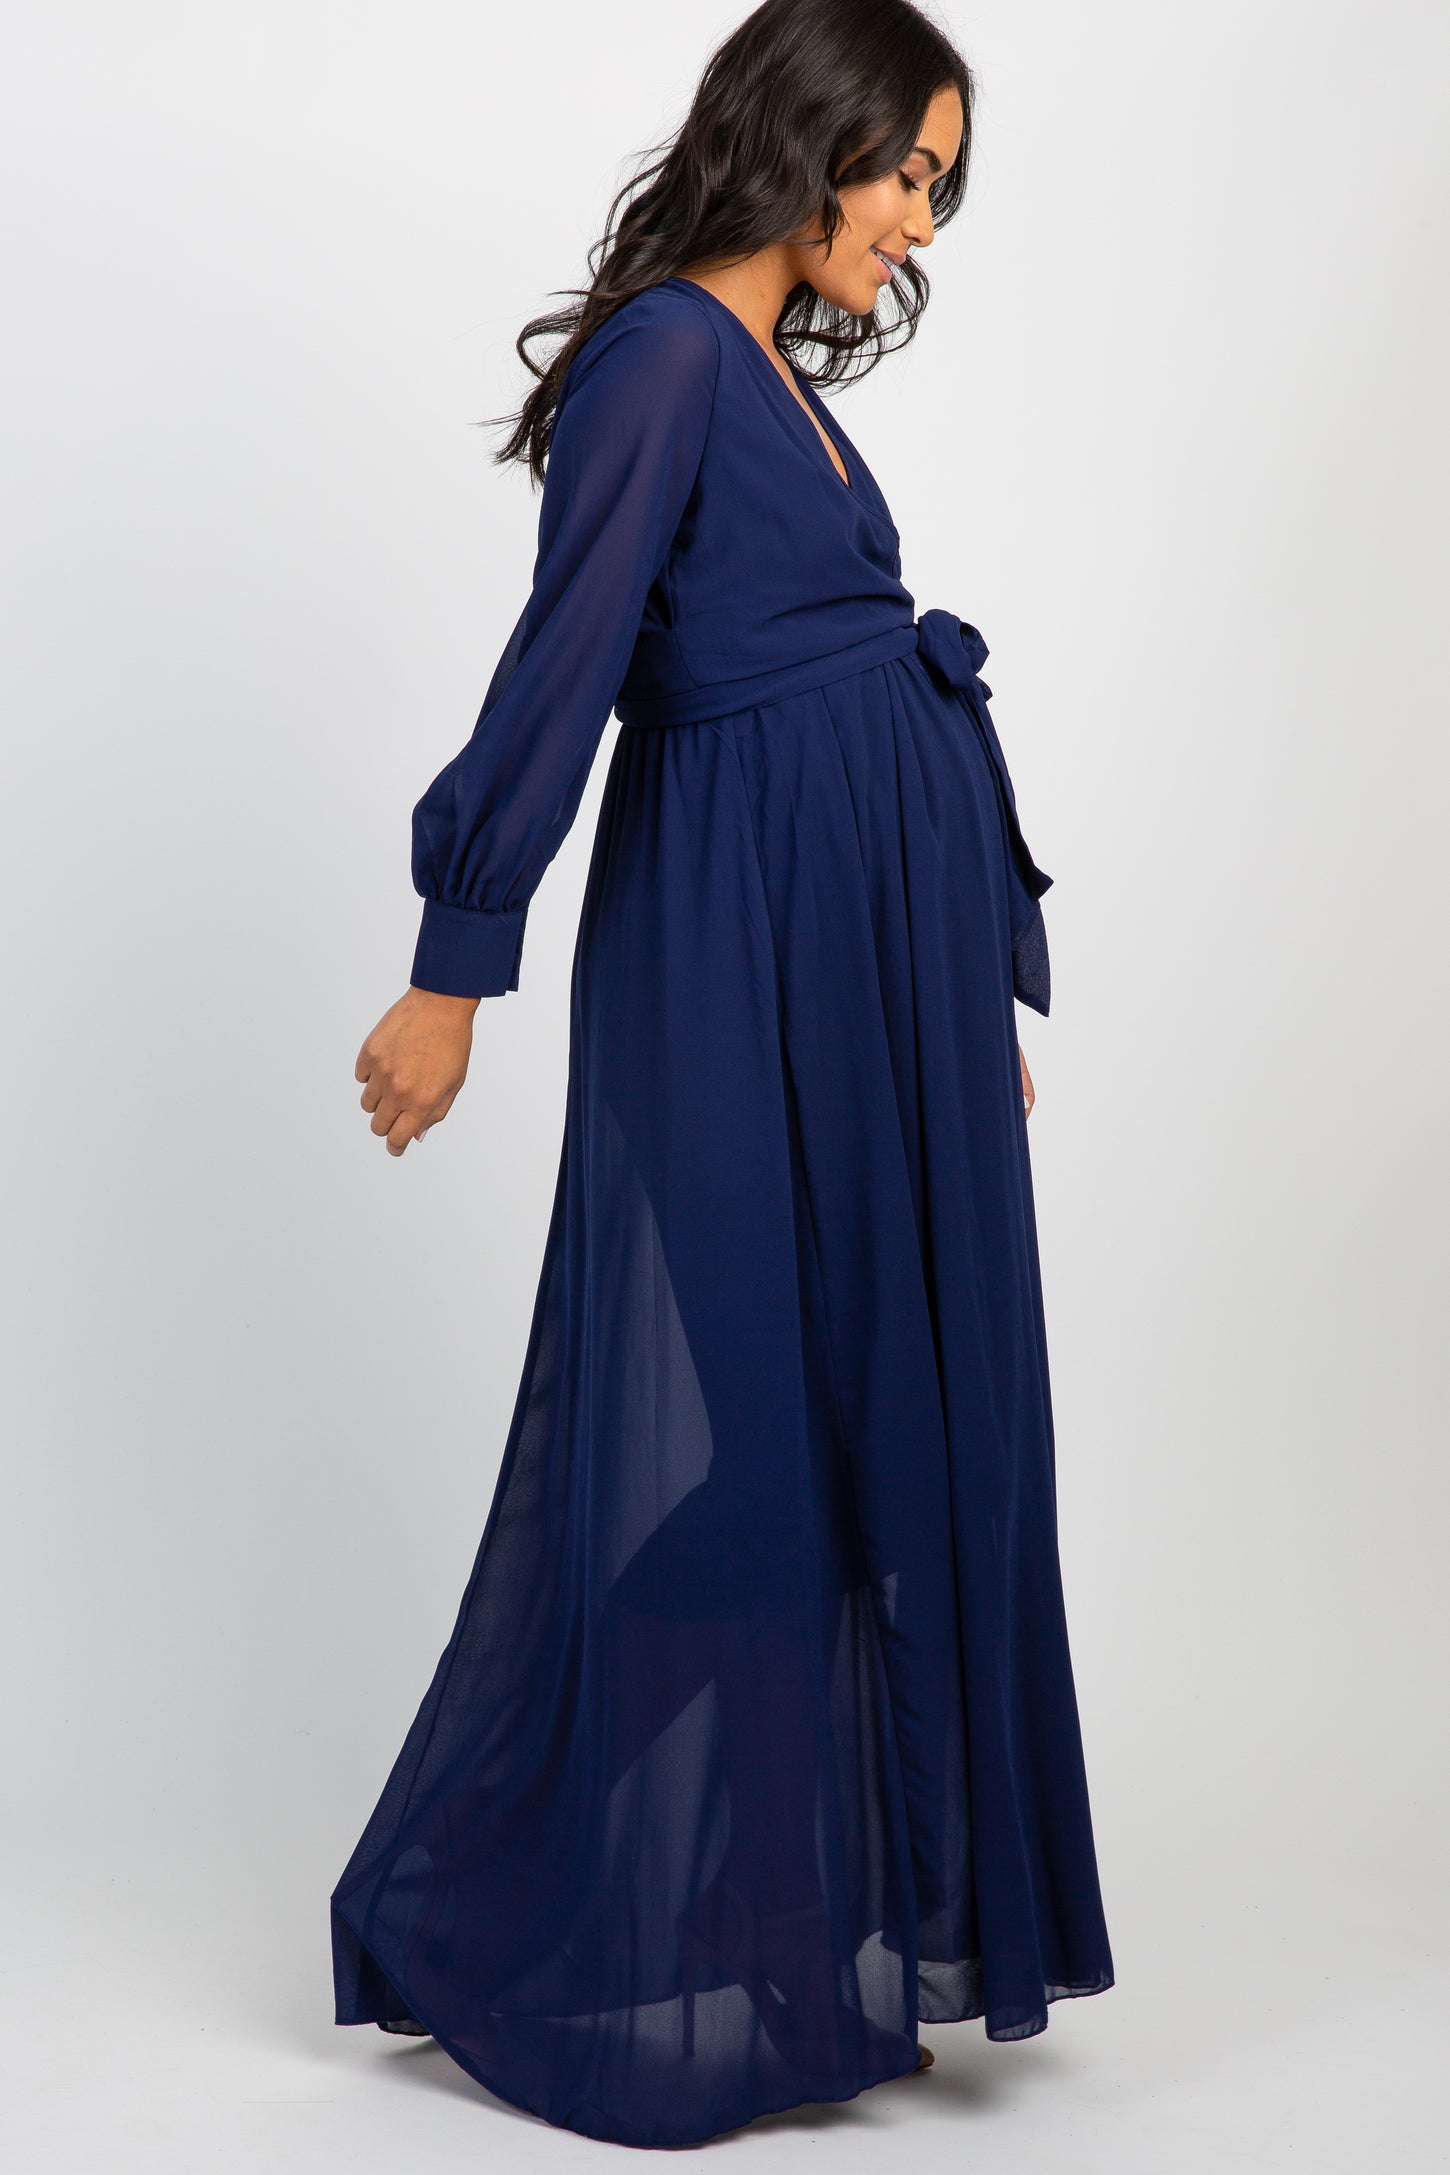 Navy Chiffon Long Sleeve Pleated Maternity Maxi Dress